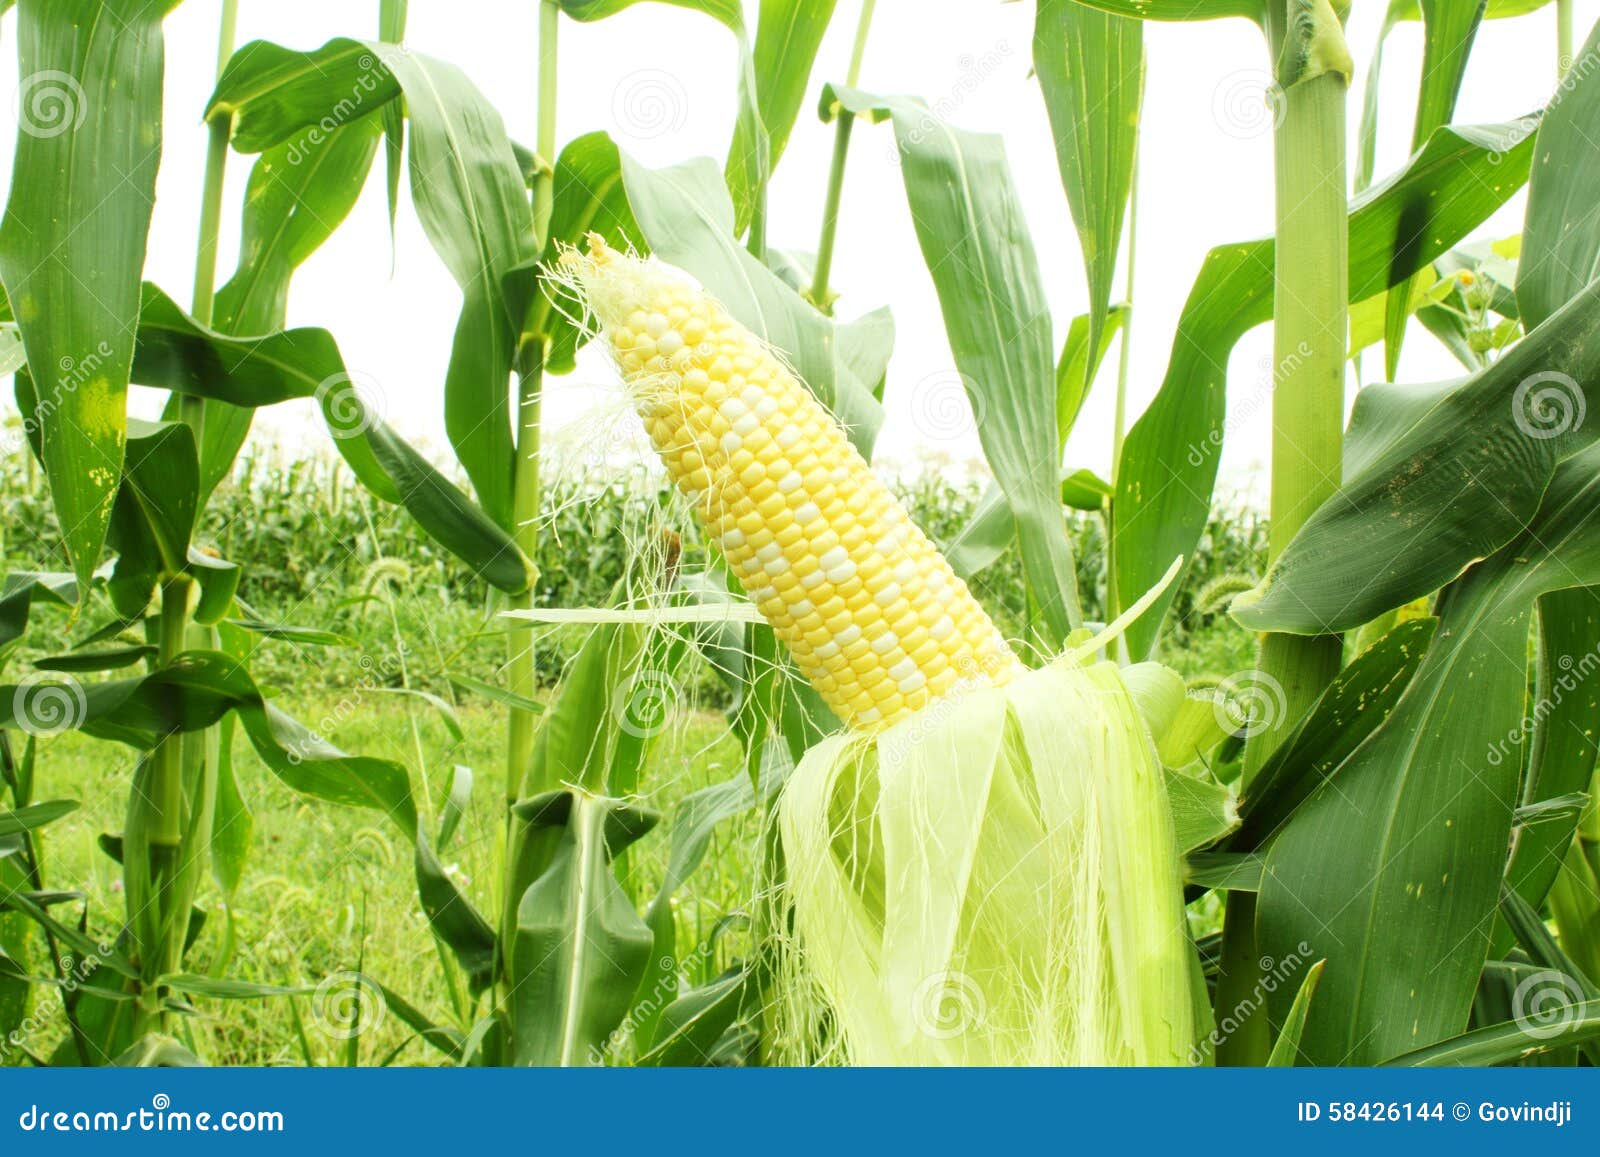 corn field with corn ear